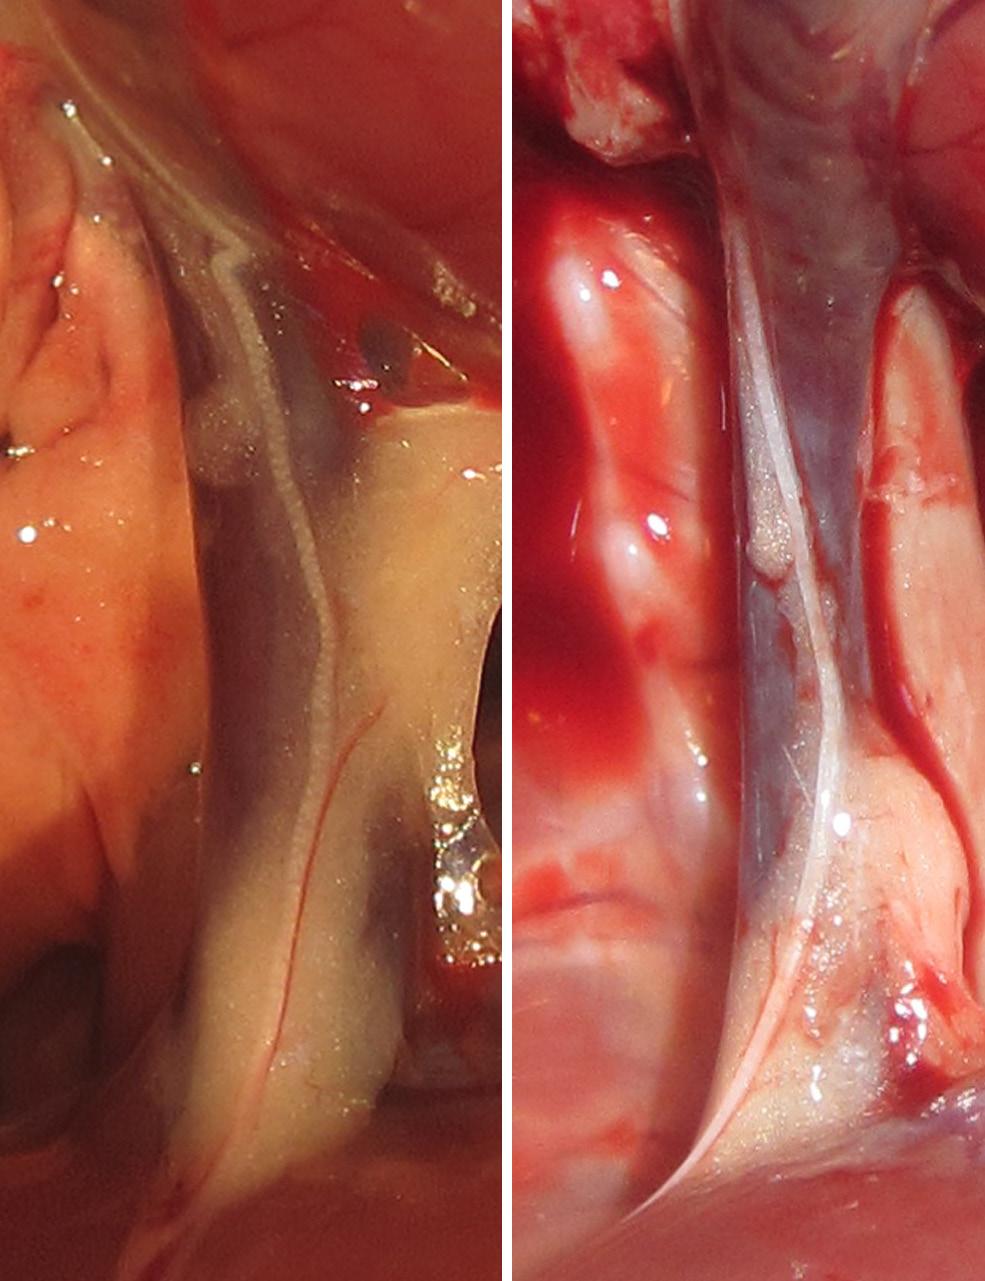 Aort daha sonra toraksın içinde aşağıya inmeye başlar, bu seyri sırasında columna vertebralis in solunda kalır. Abdominal boşluğa diafragma daki hiatus aorticus u geçerek girer.